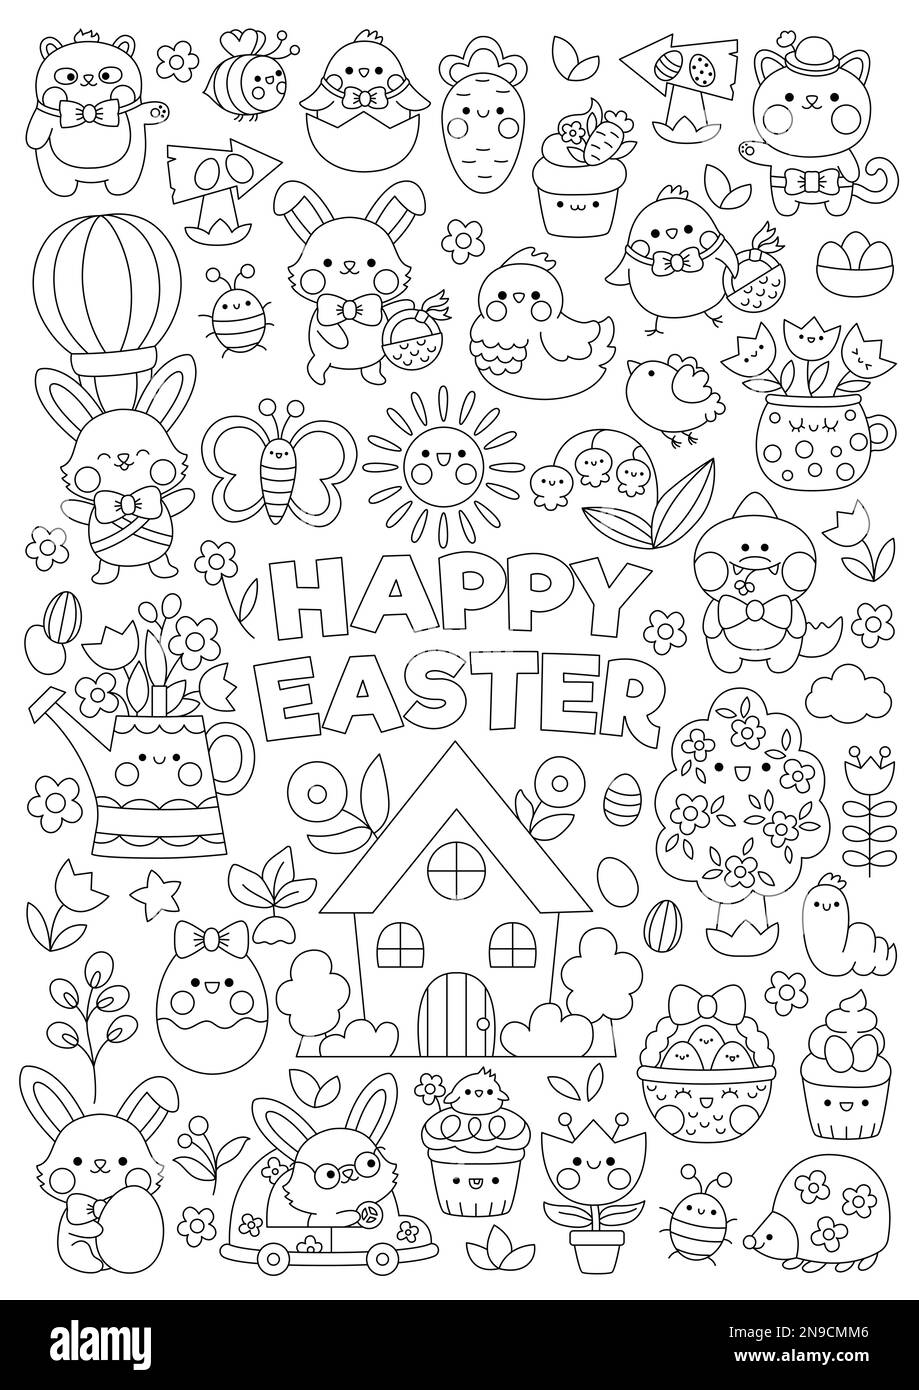 Vector Easter – vertikale Seite zum Ausmalen von Linien für Kinder mit niedlichen Kawaii-Figuren. Schwarzweißes Weihnachtsfoto mit Häschen, Mädels, Tieren Stock Vektor